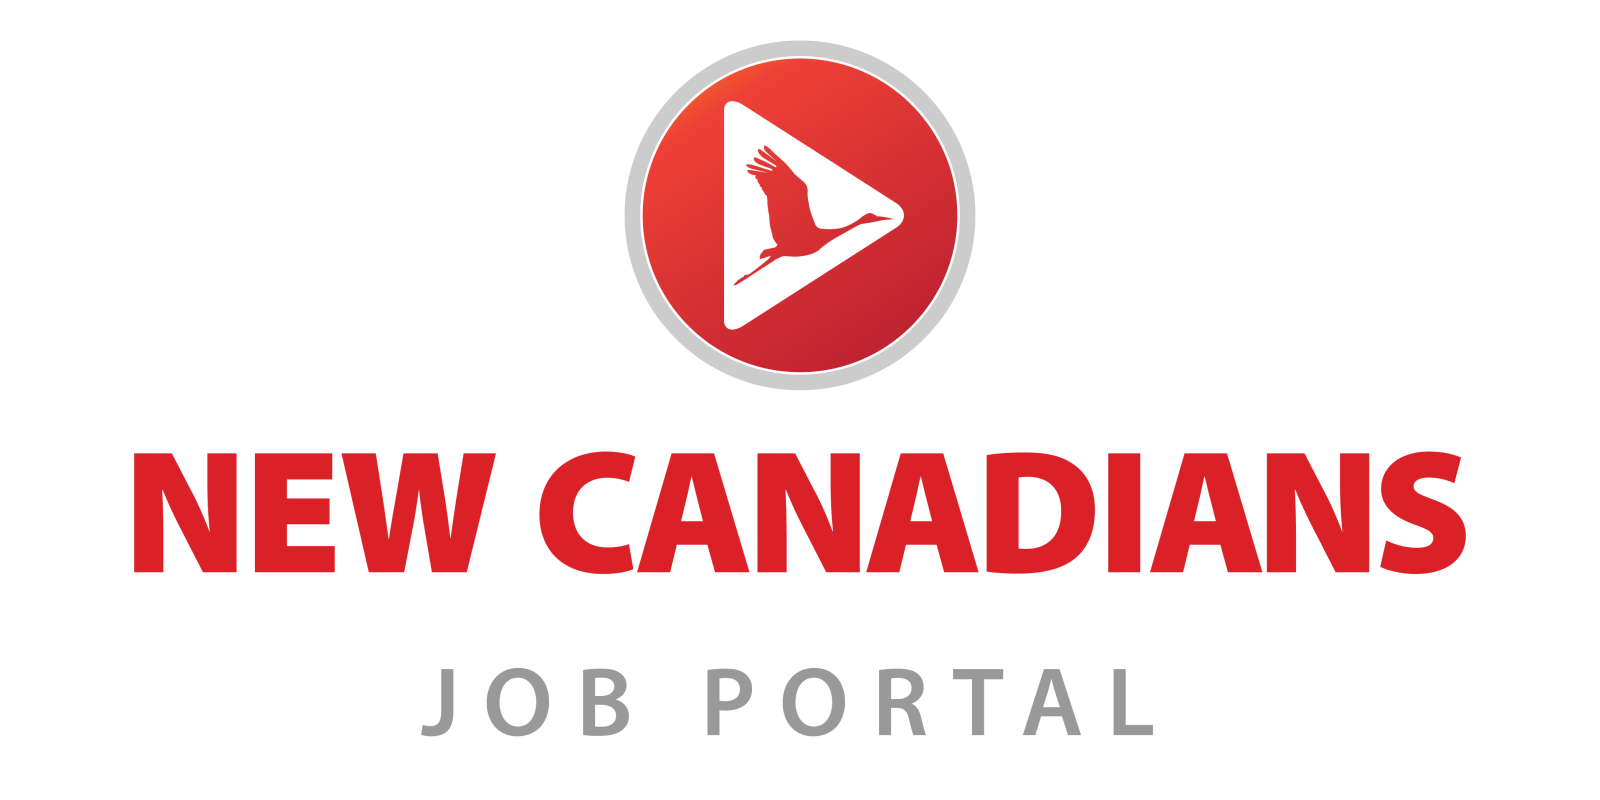 New Canadians Job Portal